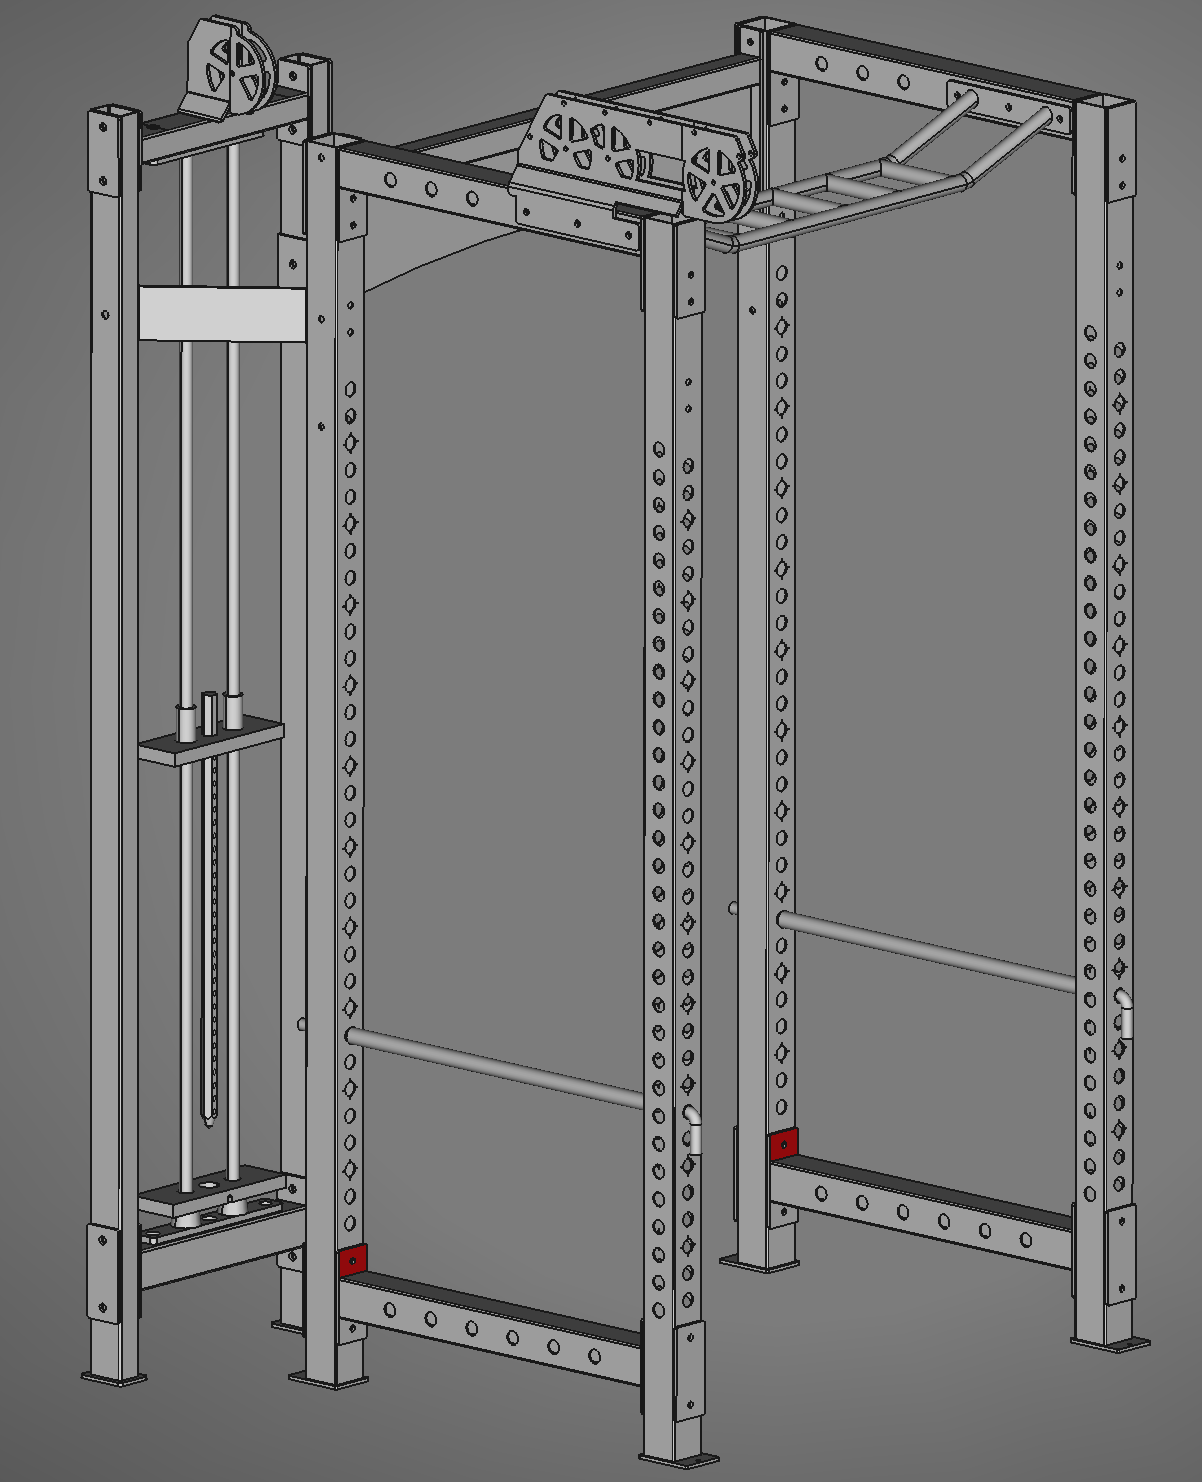 Full squat rack